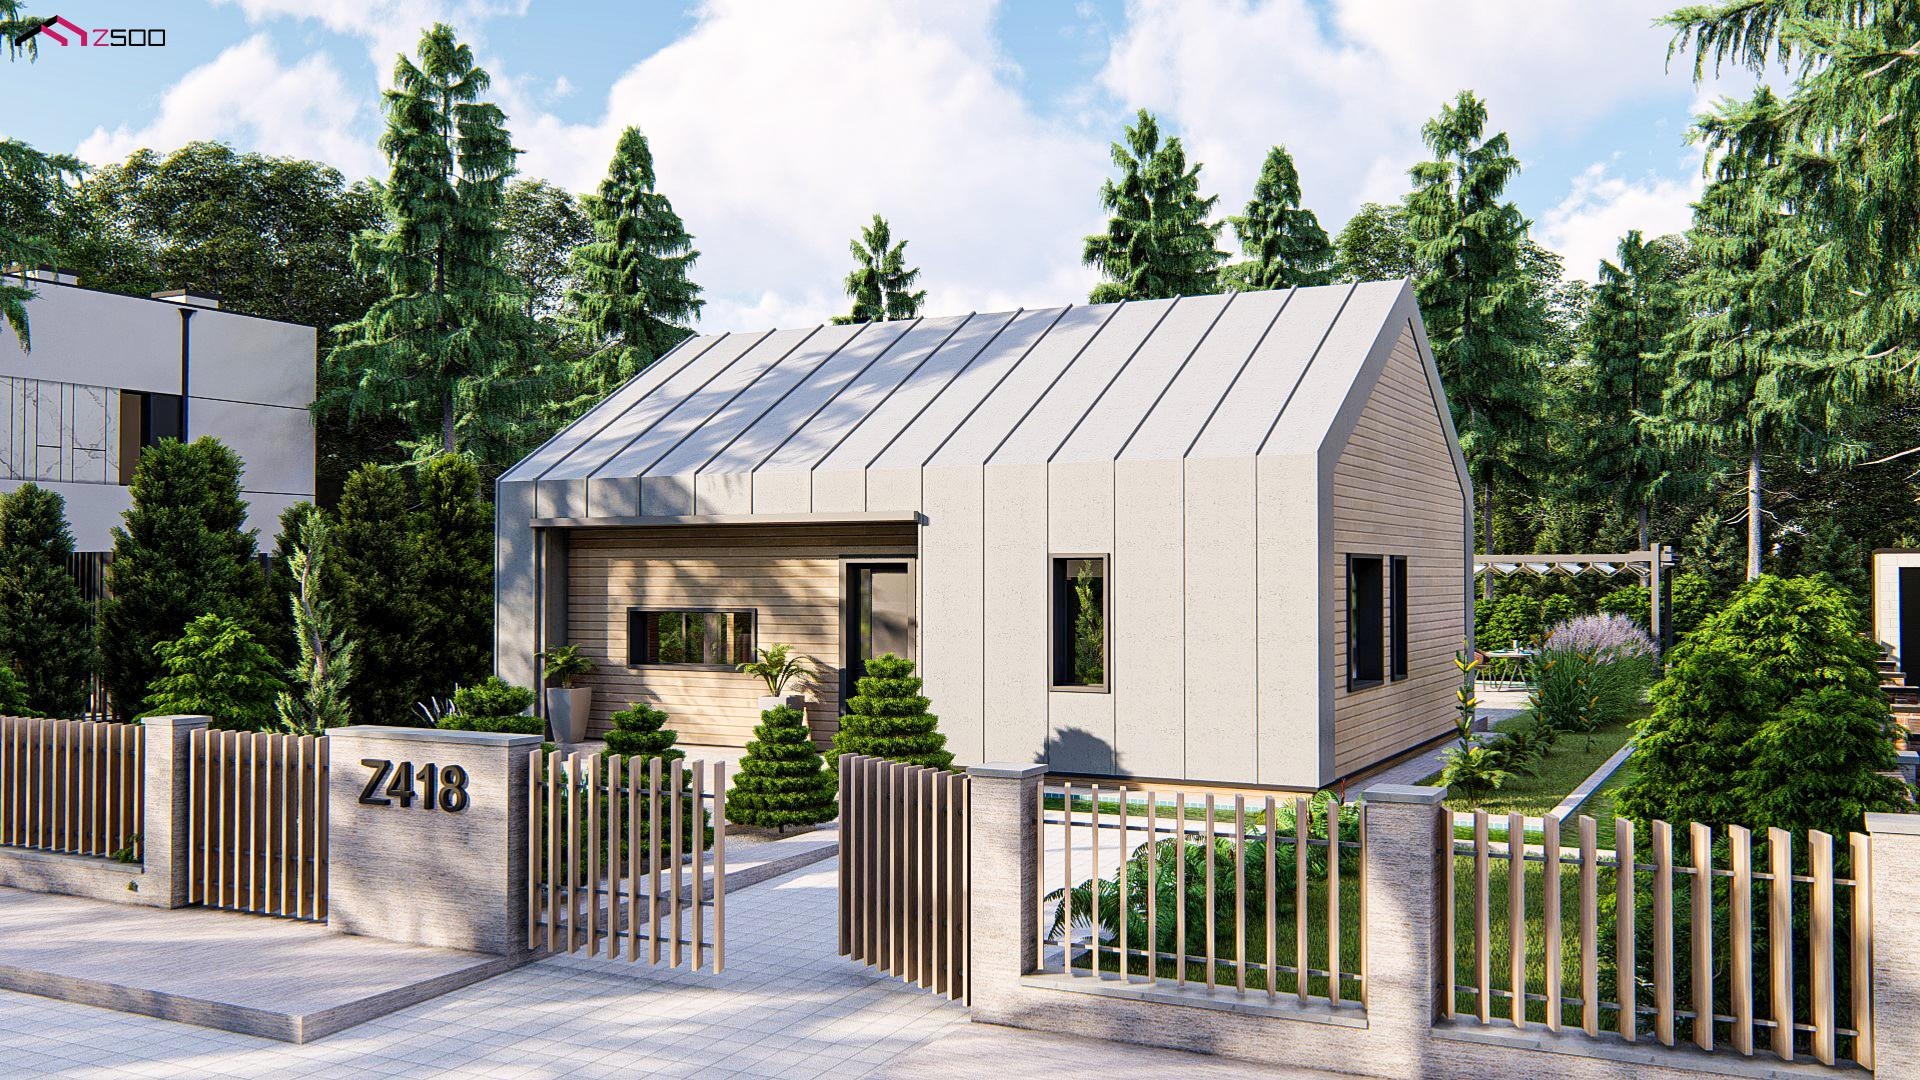 nowoczesny oryginalny dom w stylu stodoły prostokątny jasny szary dach dwuspadowy drewniane wykończe